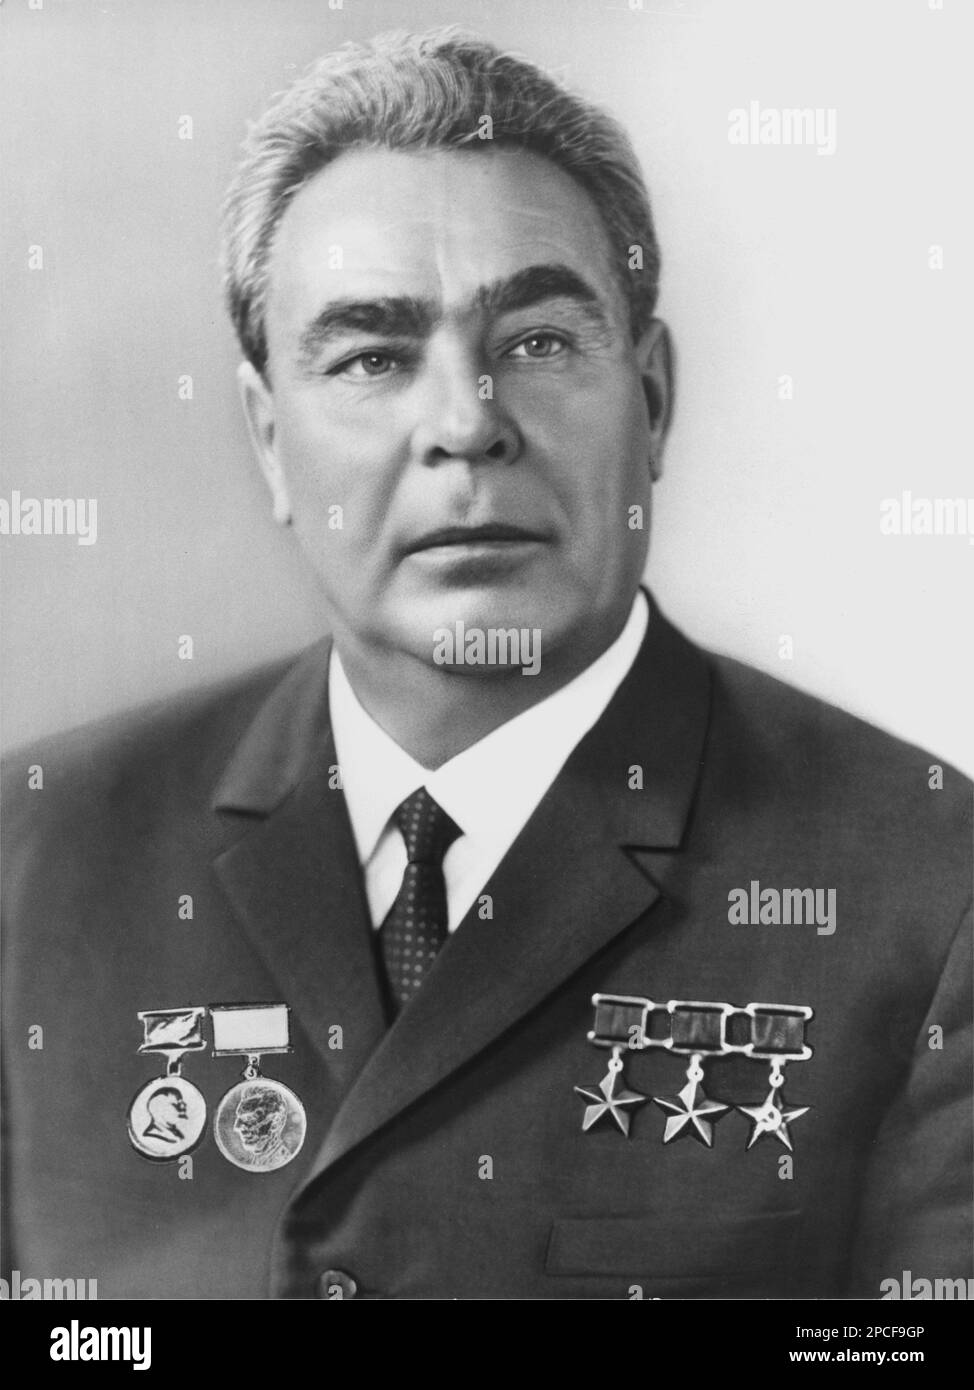 1964 Ca : der russische Ministerpräsident Leonid Iljitsch Breschnev ( 1906 - 1982 ) war von 1964 bis 1982 Generalsekretär der Kommunistischen Partei der Sowjetunion (und damit politischer Führer der Sowjetunion) und diente in dieser Position länger als jeder andere außer Joseph Stalin . Offizielles Portrait von Tass Press Agency - Portrait - Rituto - Medaillen - Medaglia - medaglie - Krawatte - Cravatta - Halsband - colletto - POLITICA - POLITISCH - SOZIALISTISCH - SOZIALISMO - SOZIALISMUS - COMUNISTA - COMUNISMO - KOMMUNIST - KOMMUNISMUS - foto storiche - foto storica - BREZNIEV - Leonìd Il'ìc Brèznev - Stockfoto